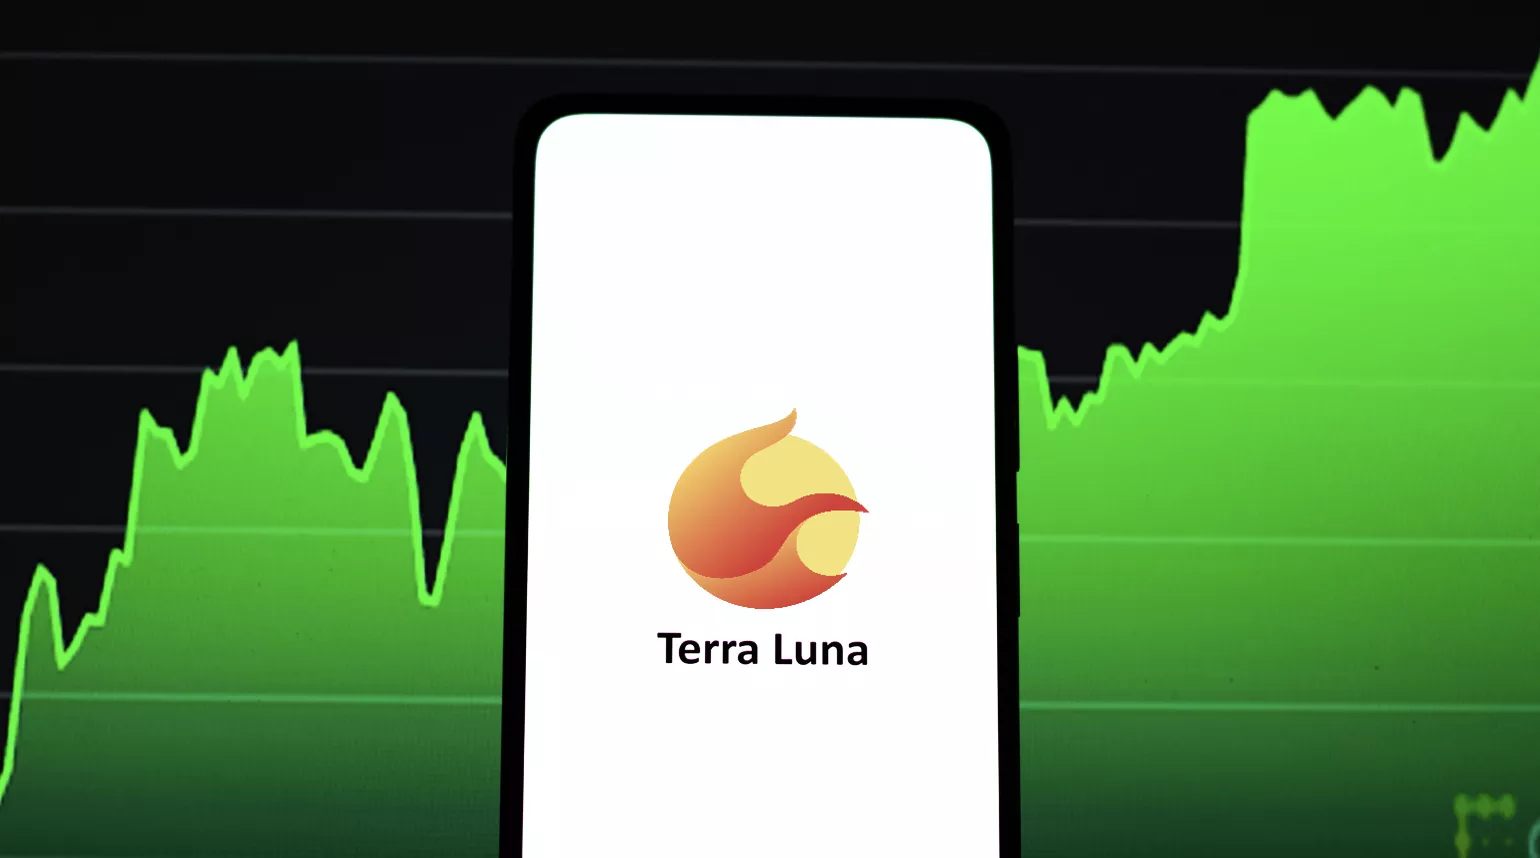 Breaking: Ook Luna 2.0 schiet plotseling met 225% omhoog